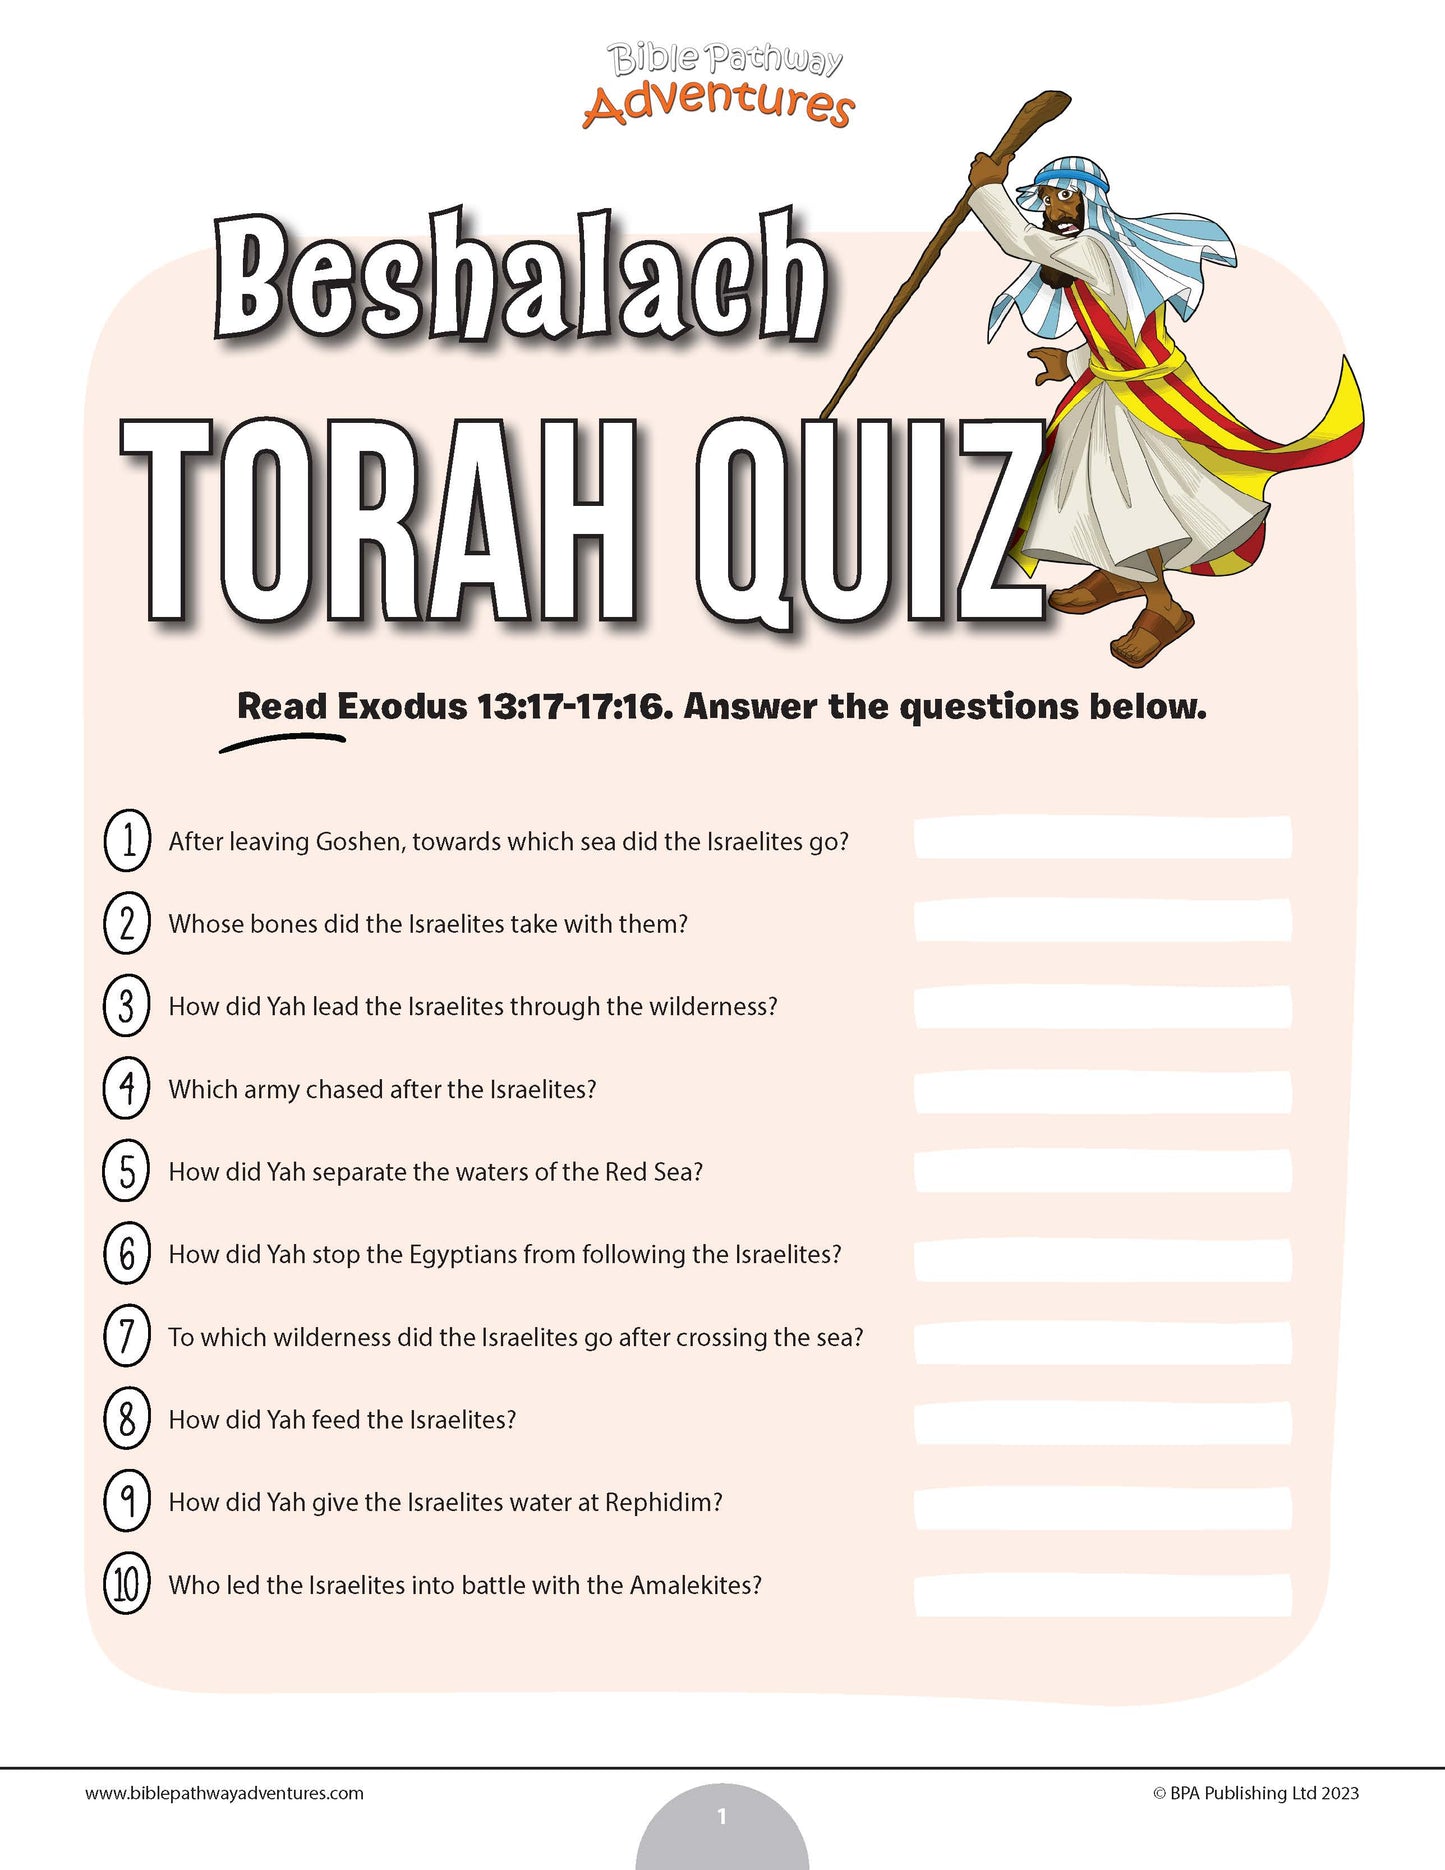 Cuestionario de Beshalaj Torá